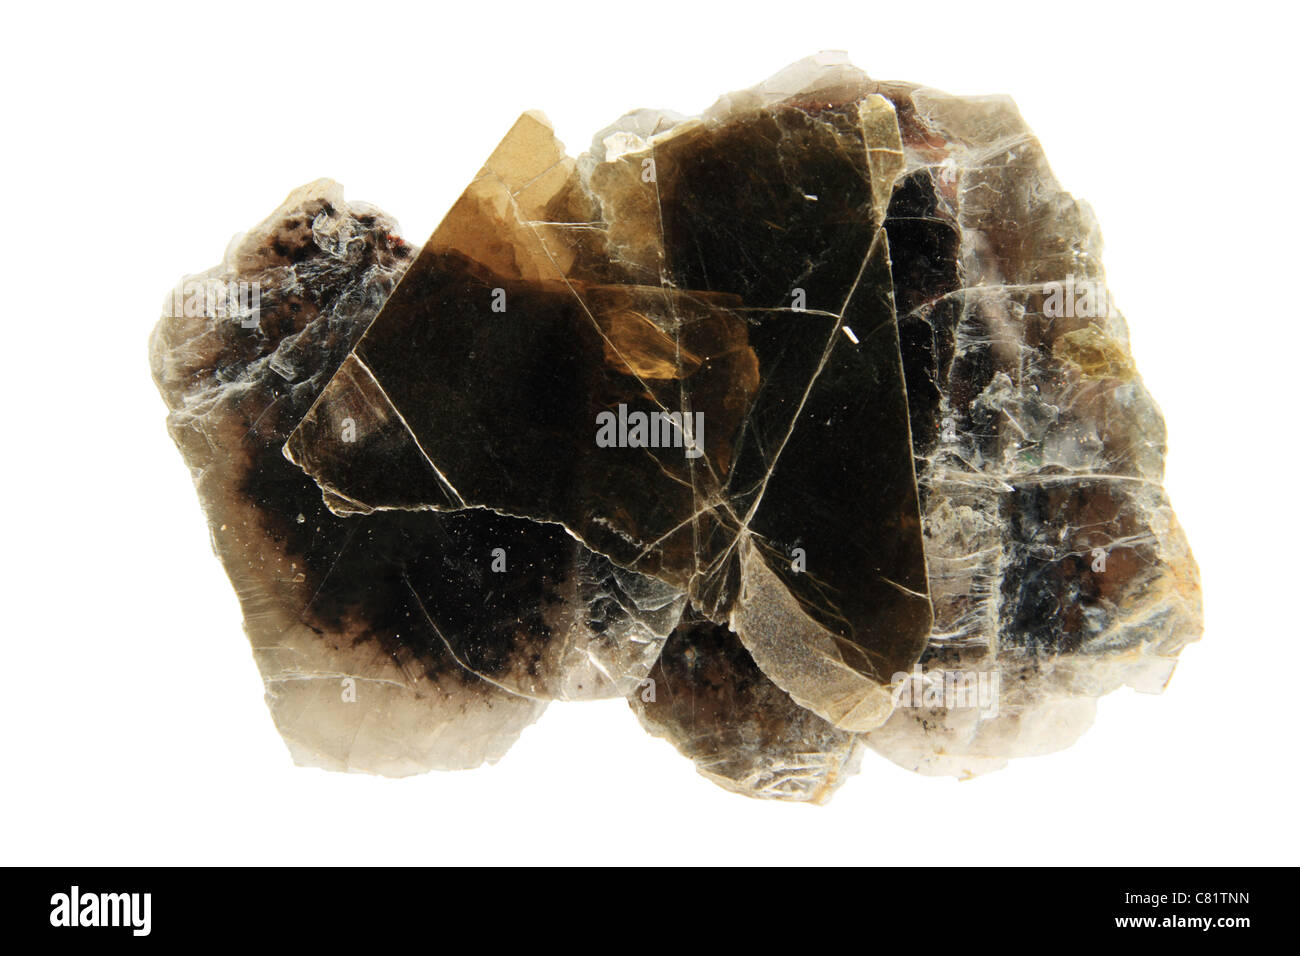 Échantillon de la phlogopite sombre bilan minéral isolated on white Banque D'Images